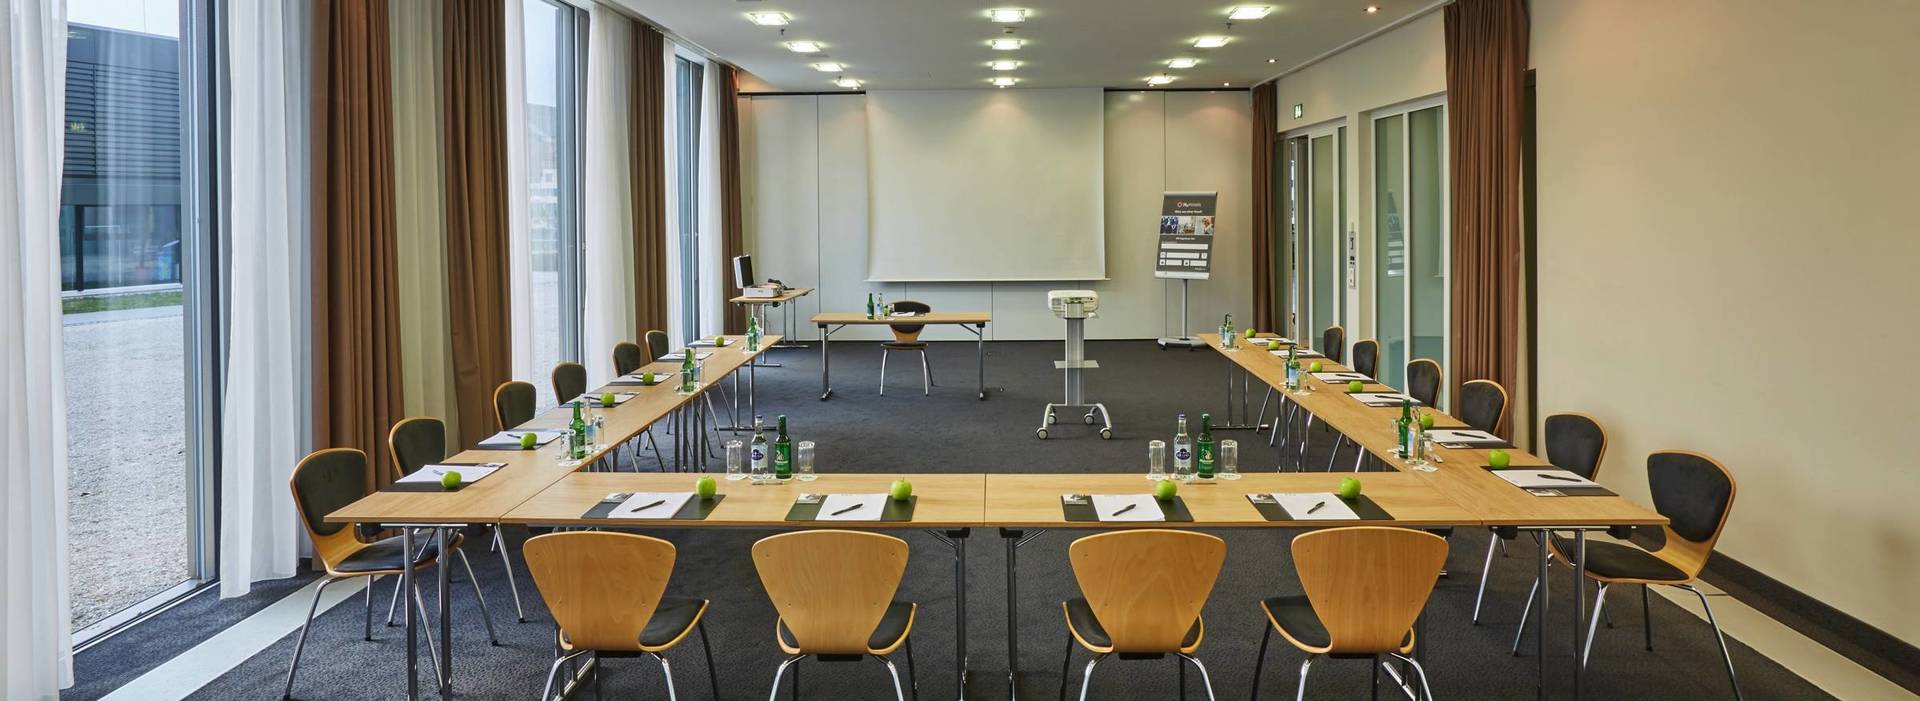 Tagungs- und Seminarraum im H4 Hotel Solothurn - Offizielle Webseite